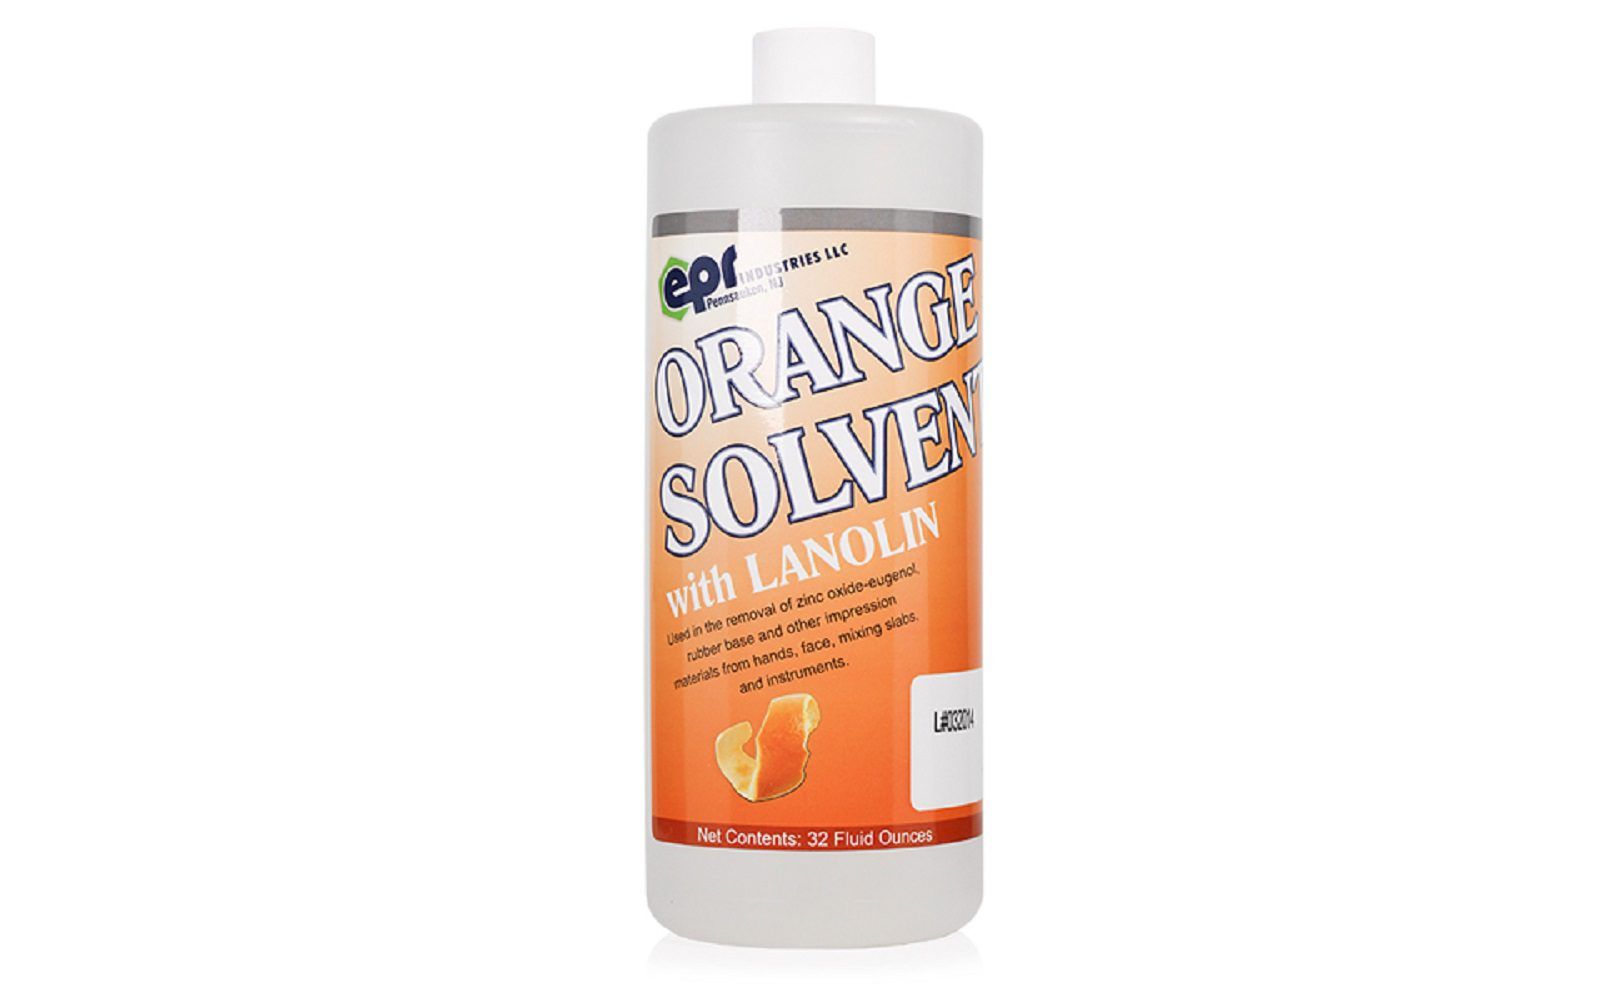 Epr orange solvent, 32 oz. Bottle. With lanolin. To remove zinc oxide-eugenol